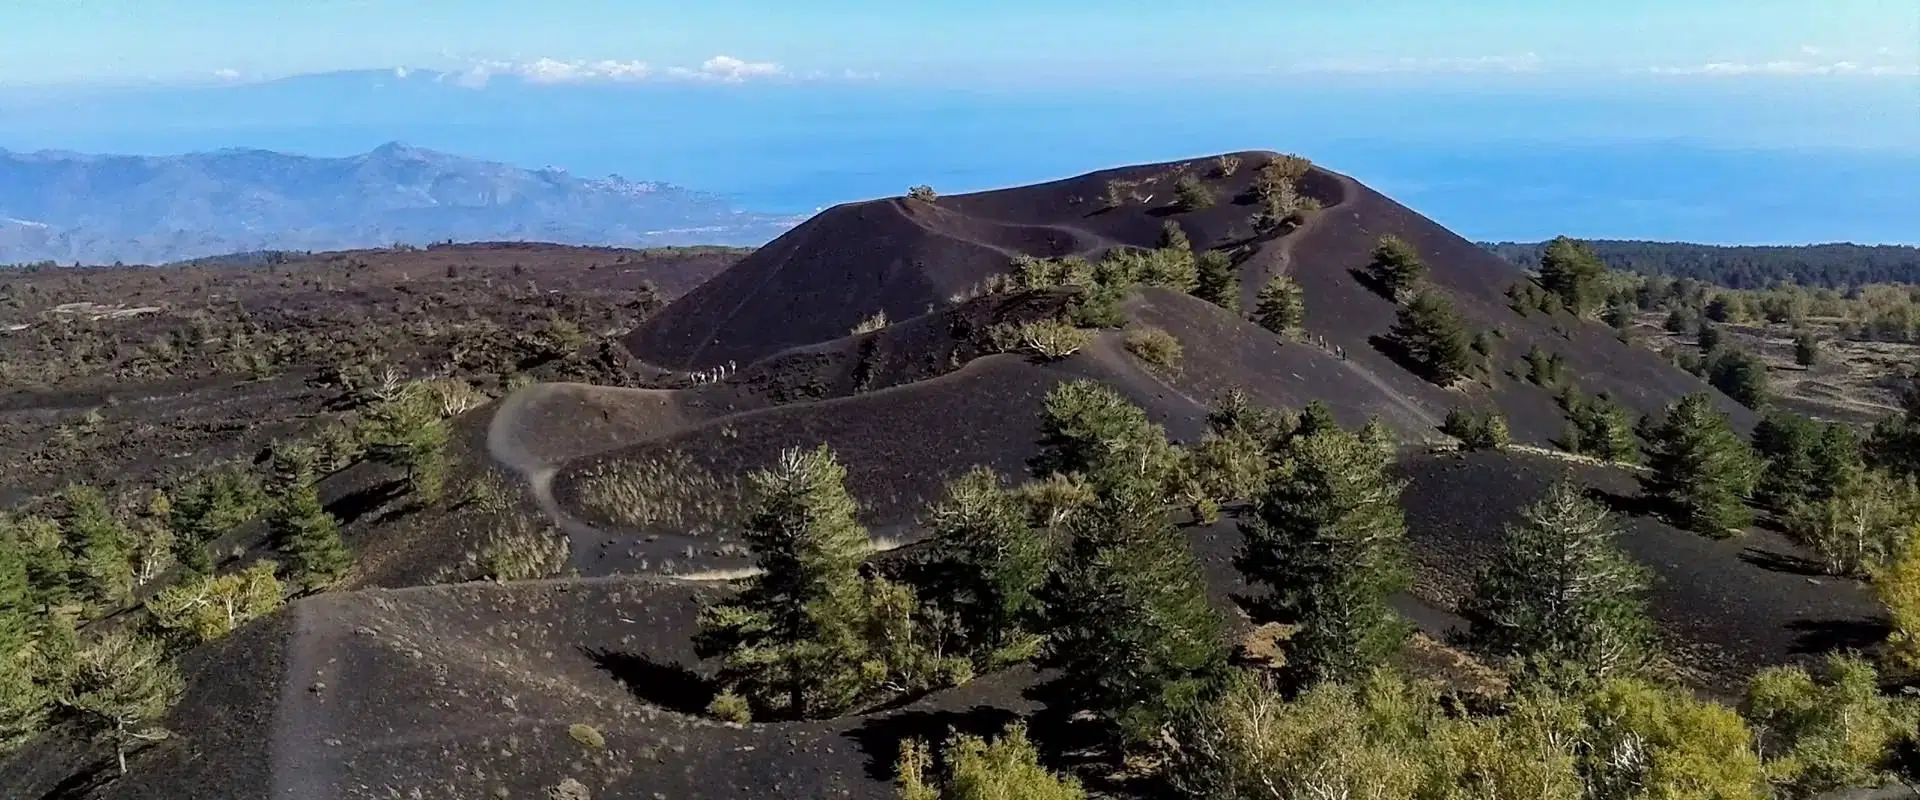 Circuito ad Anello sull’Etna: da Serracozzo ai Crateri Sartorius